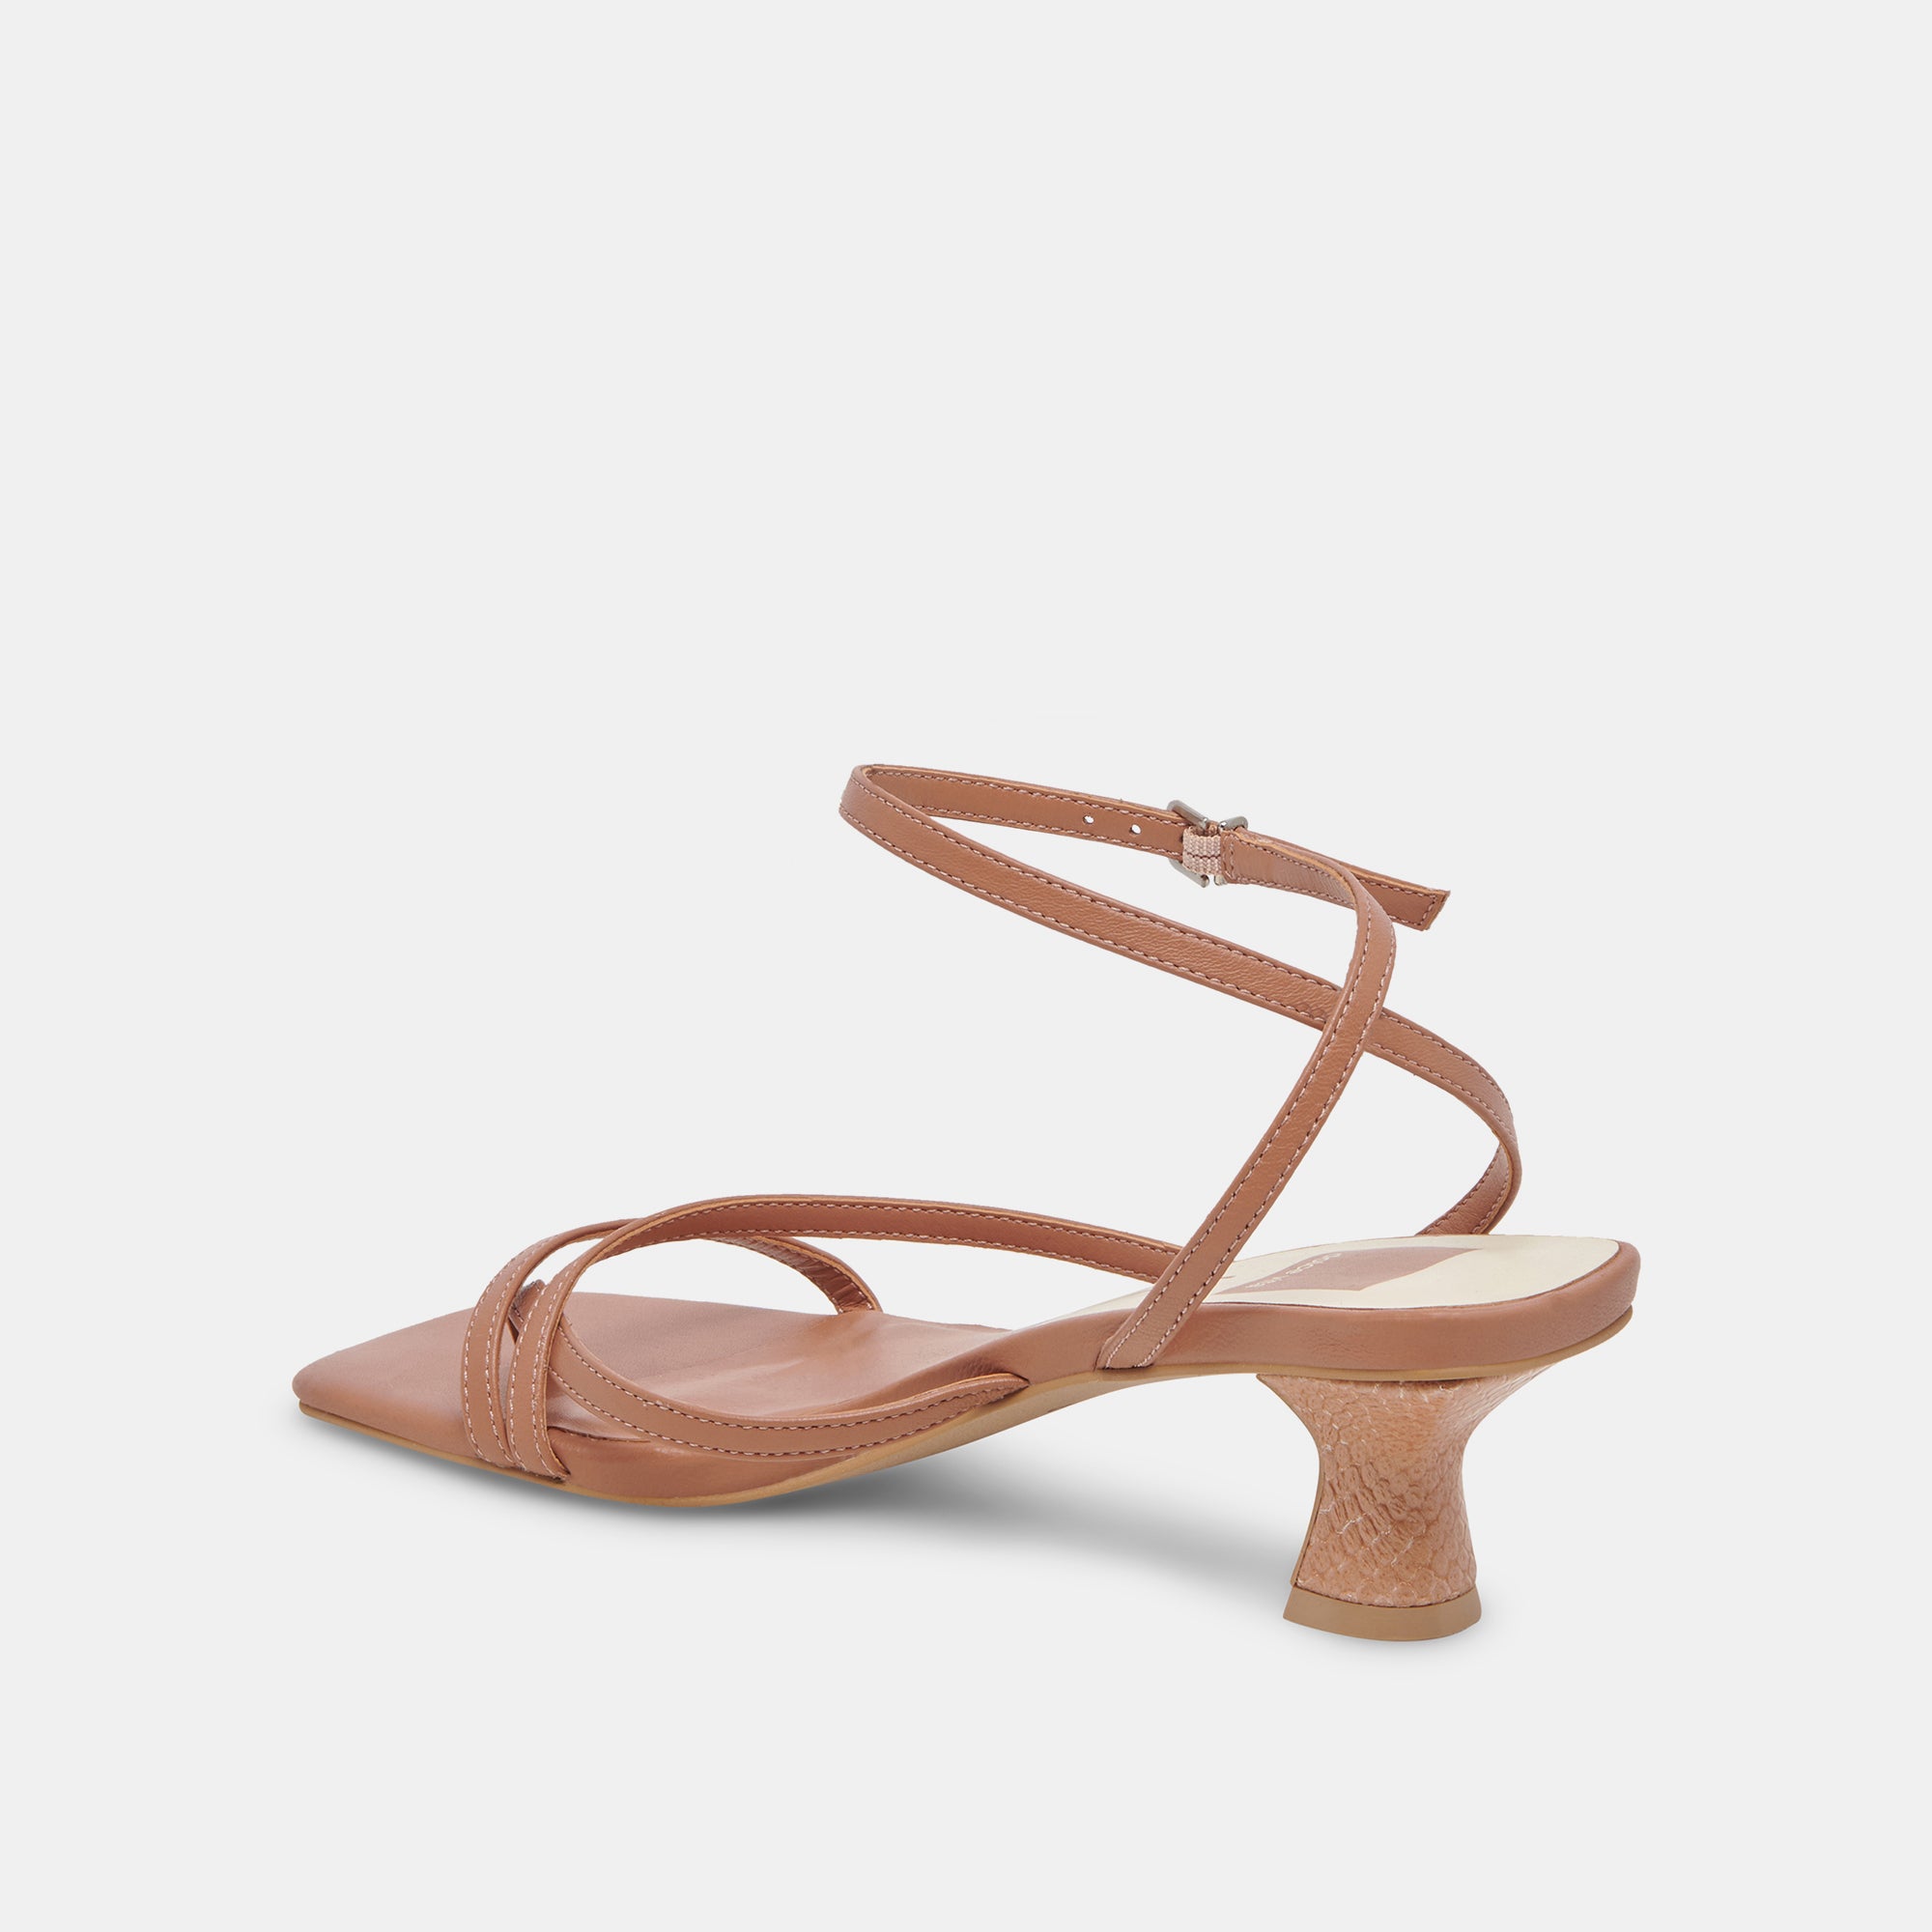 BAYLOR Heels Caramel Leather | Caramel Leather Heeled Sandals – Dolce Vita